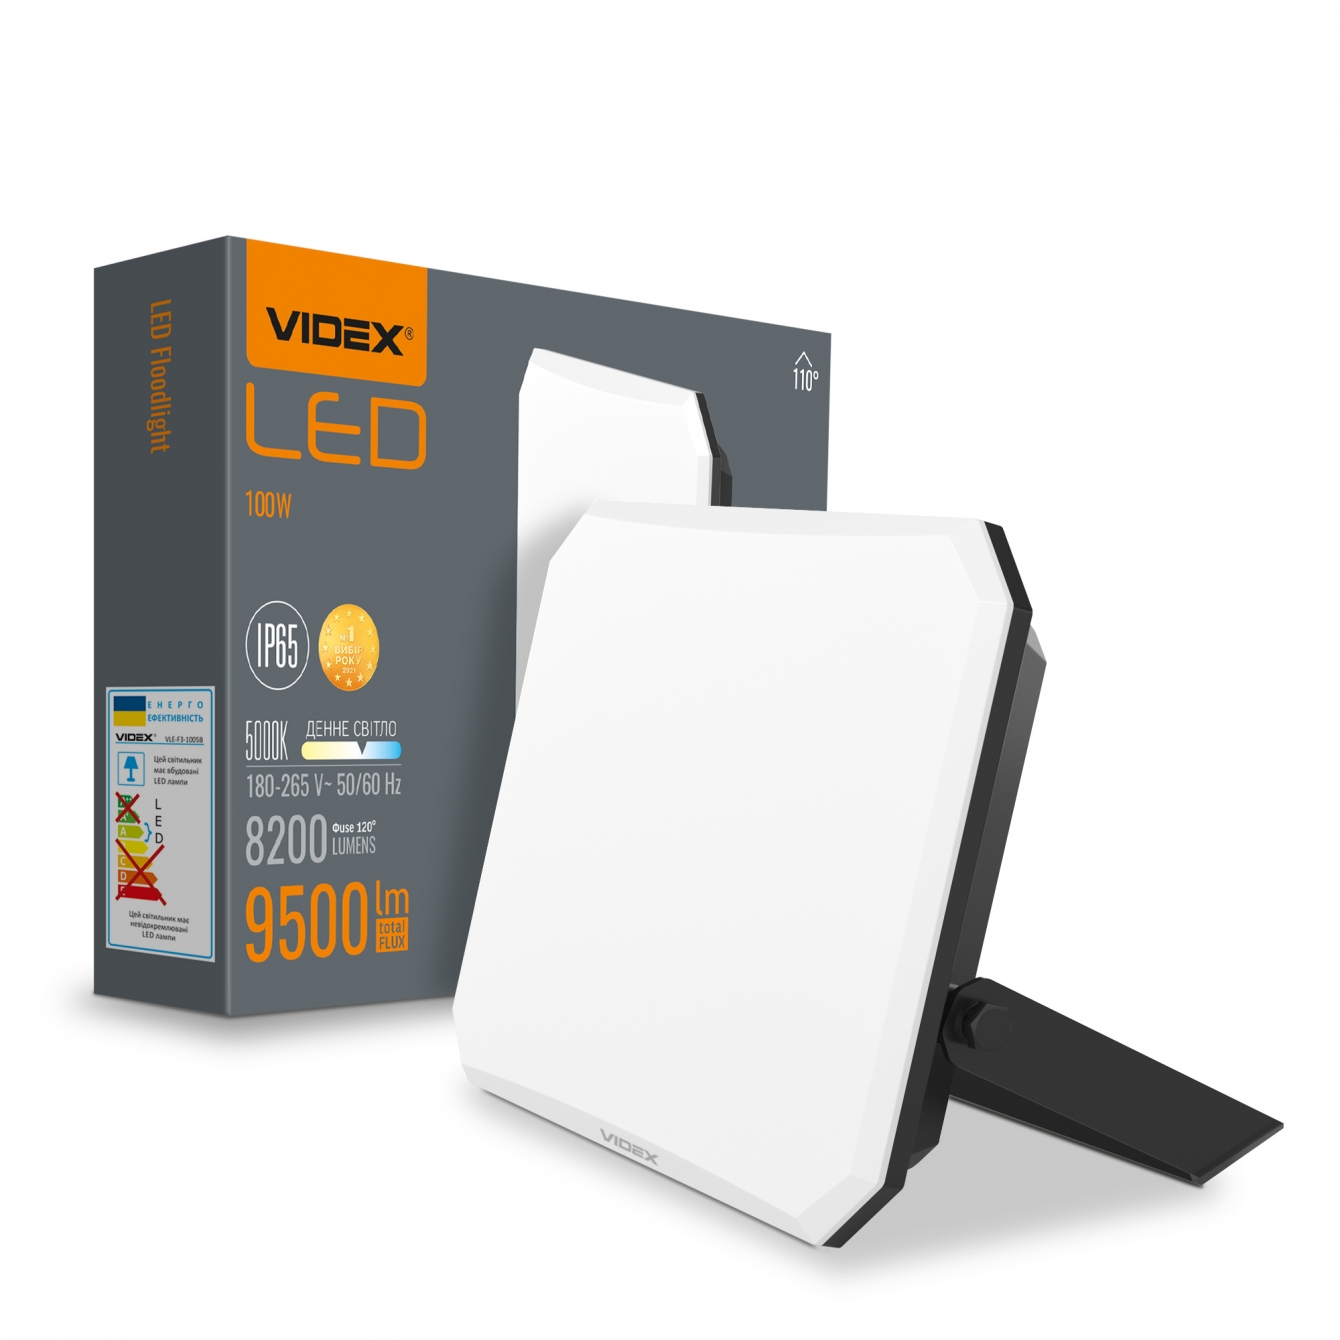 LED прожектор Videx F3 100W 5000K 220V Black (VLE-F3-1005B) - фото 2